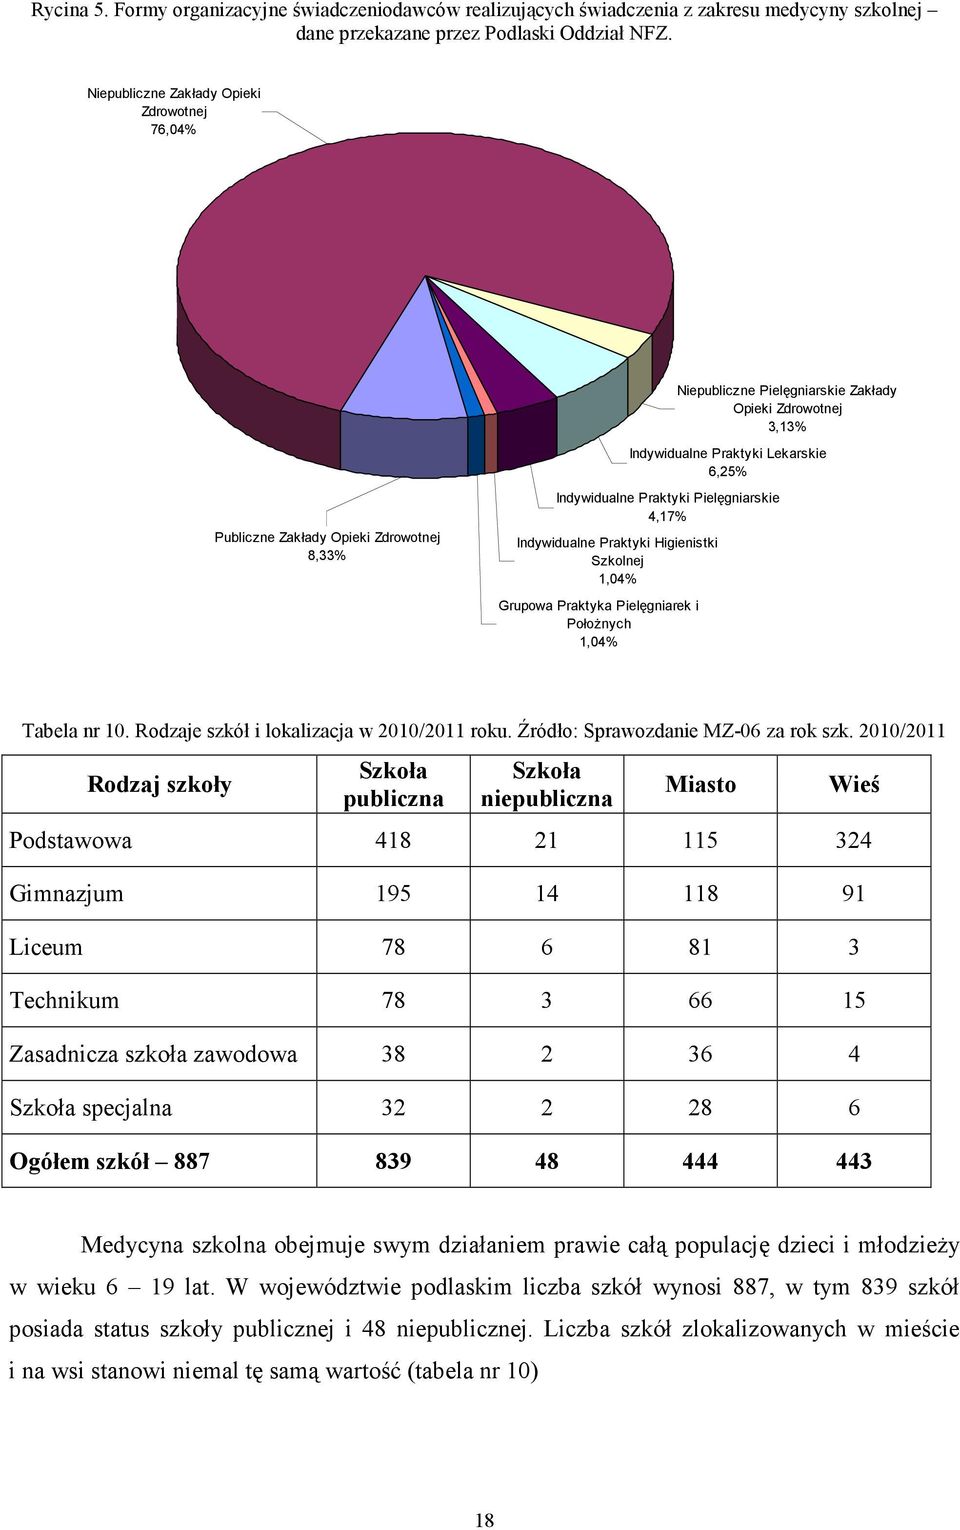 Praktyki Pielęgniarskie 4,17% Indywidualne Praktyki Higienistki Szkolnej 1,04% Grupowa Praktyka Pielęgniarek i PołoŜnych 1,04% Tabela nr 10. Rodzaje szkół i lokalizacja w 2010/2011 roku.